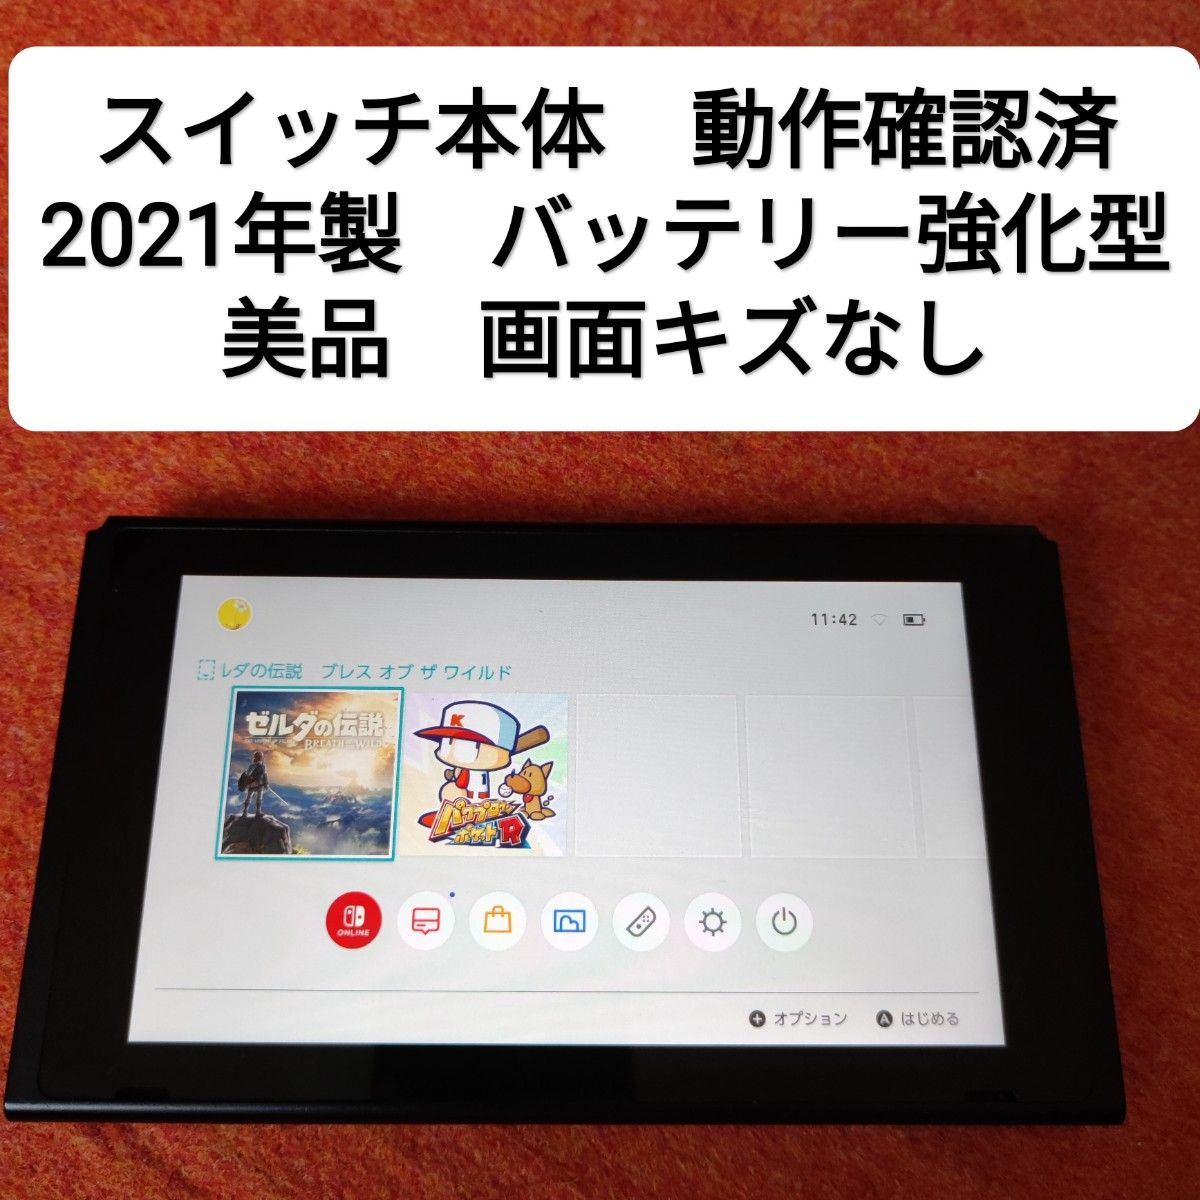 テレビ/映像機器 その他 美品】新型 Nintendo Switch バッテリー強化モデル - kanimbandung 